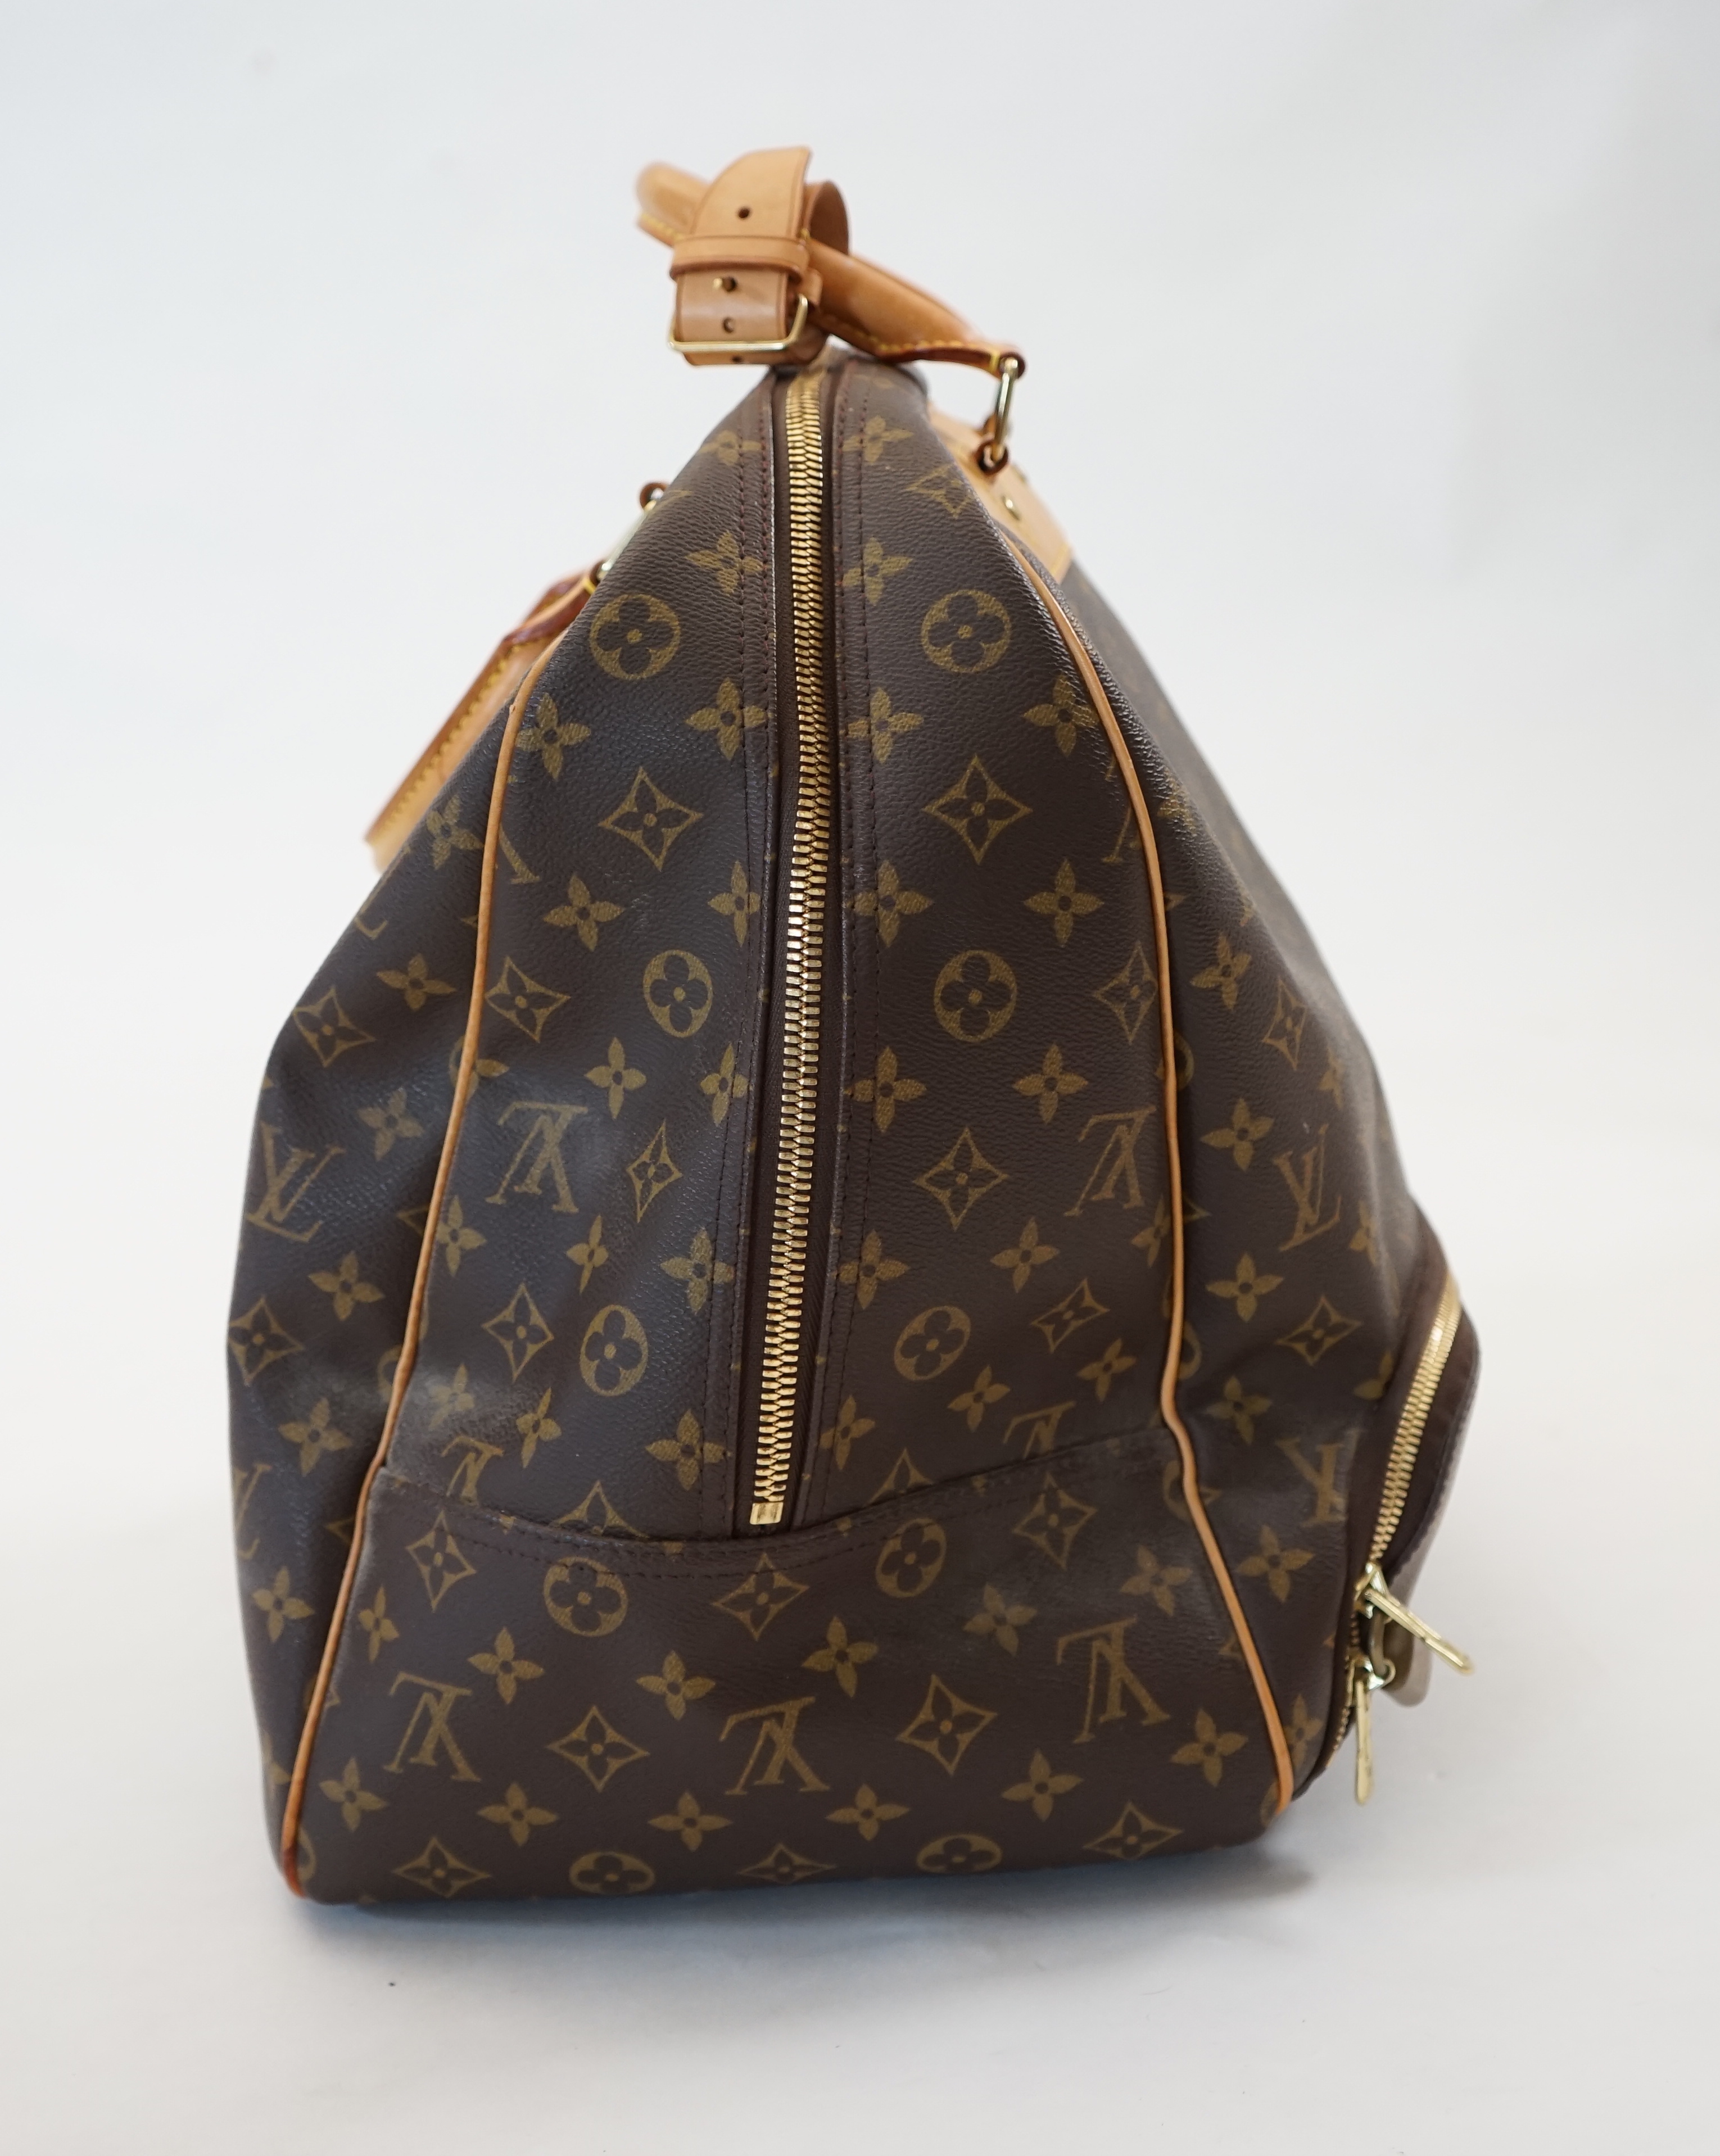 A Louis Vuitton Evasion travel bag width 38cm, depth 23cm, length 33cm, hand drop 12cm